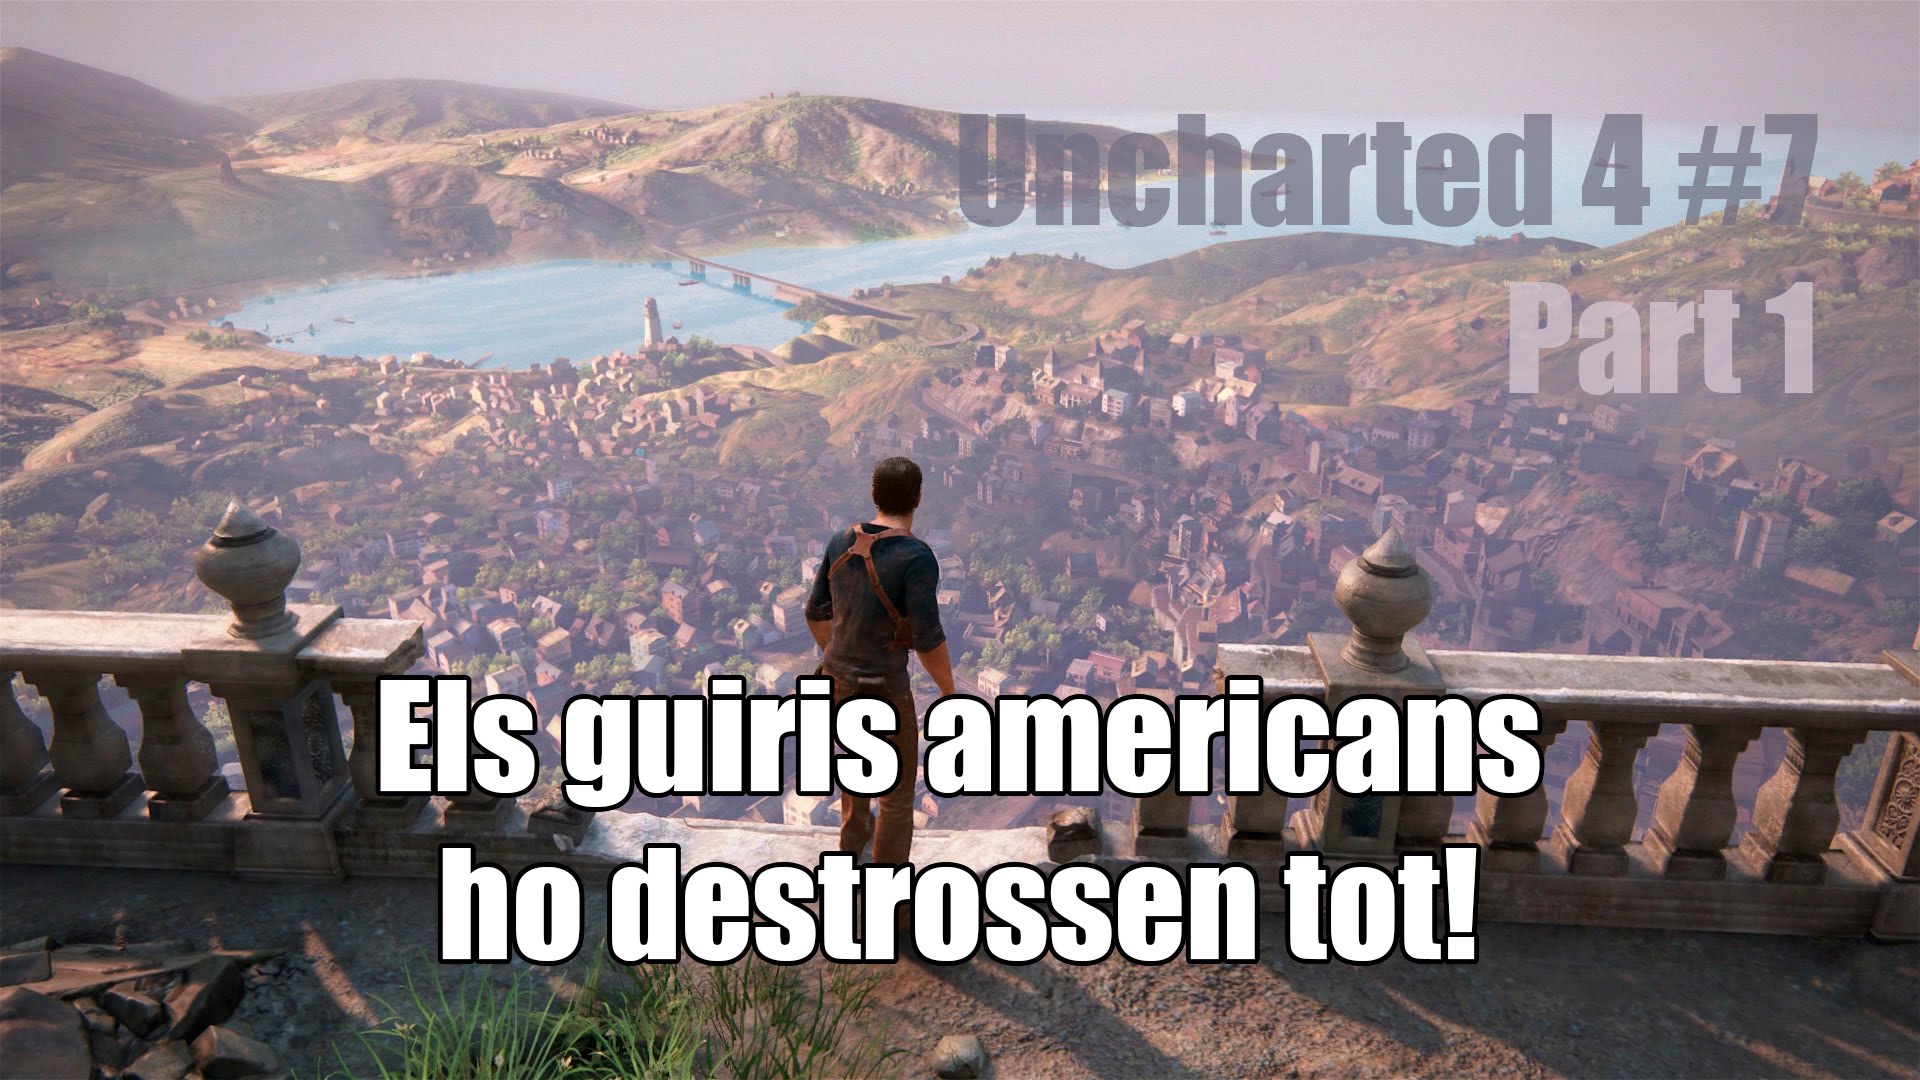 Els guiris americans ho destrossen tot! (Part 1) | UNCHARTED 4 #7 de Dev Id